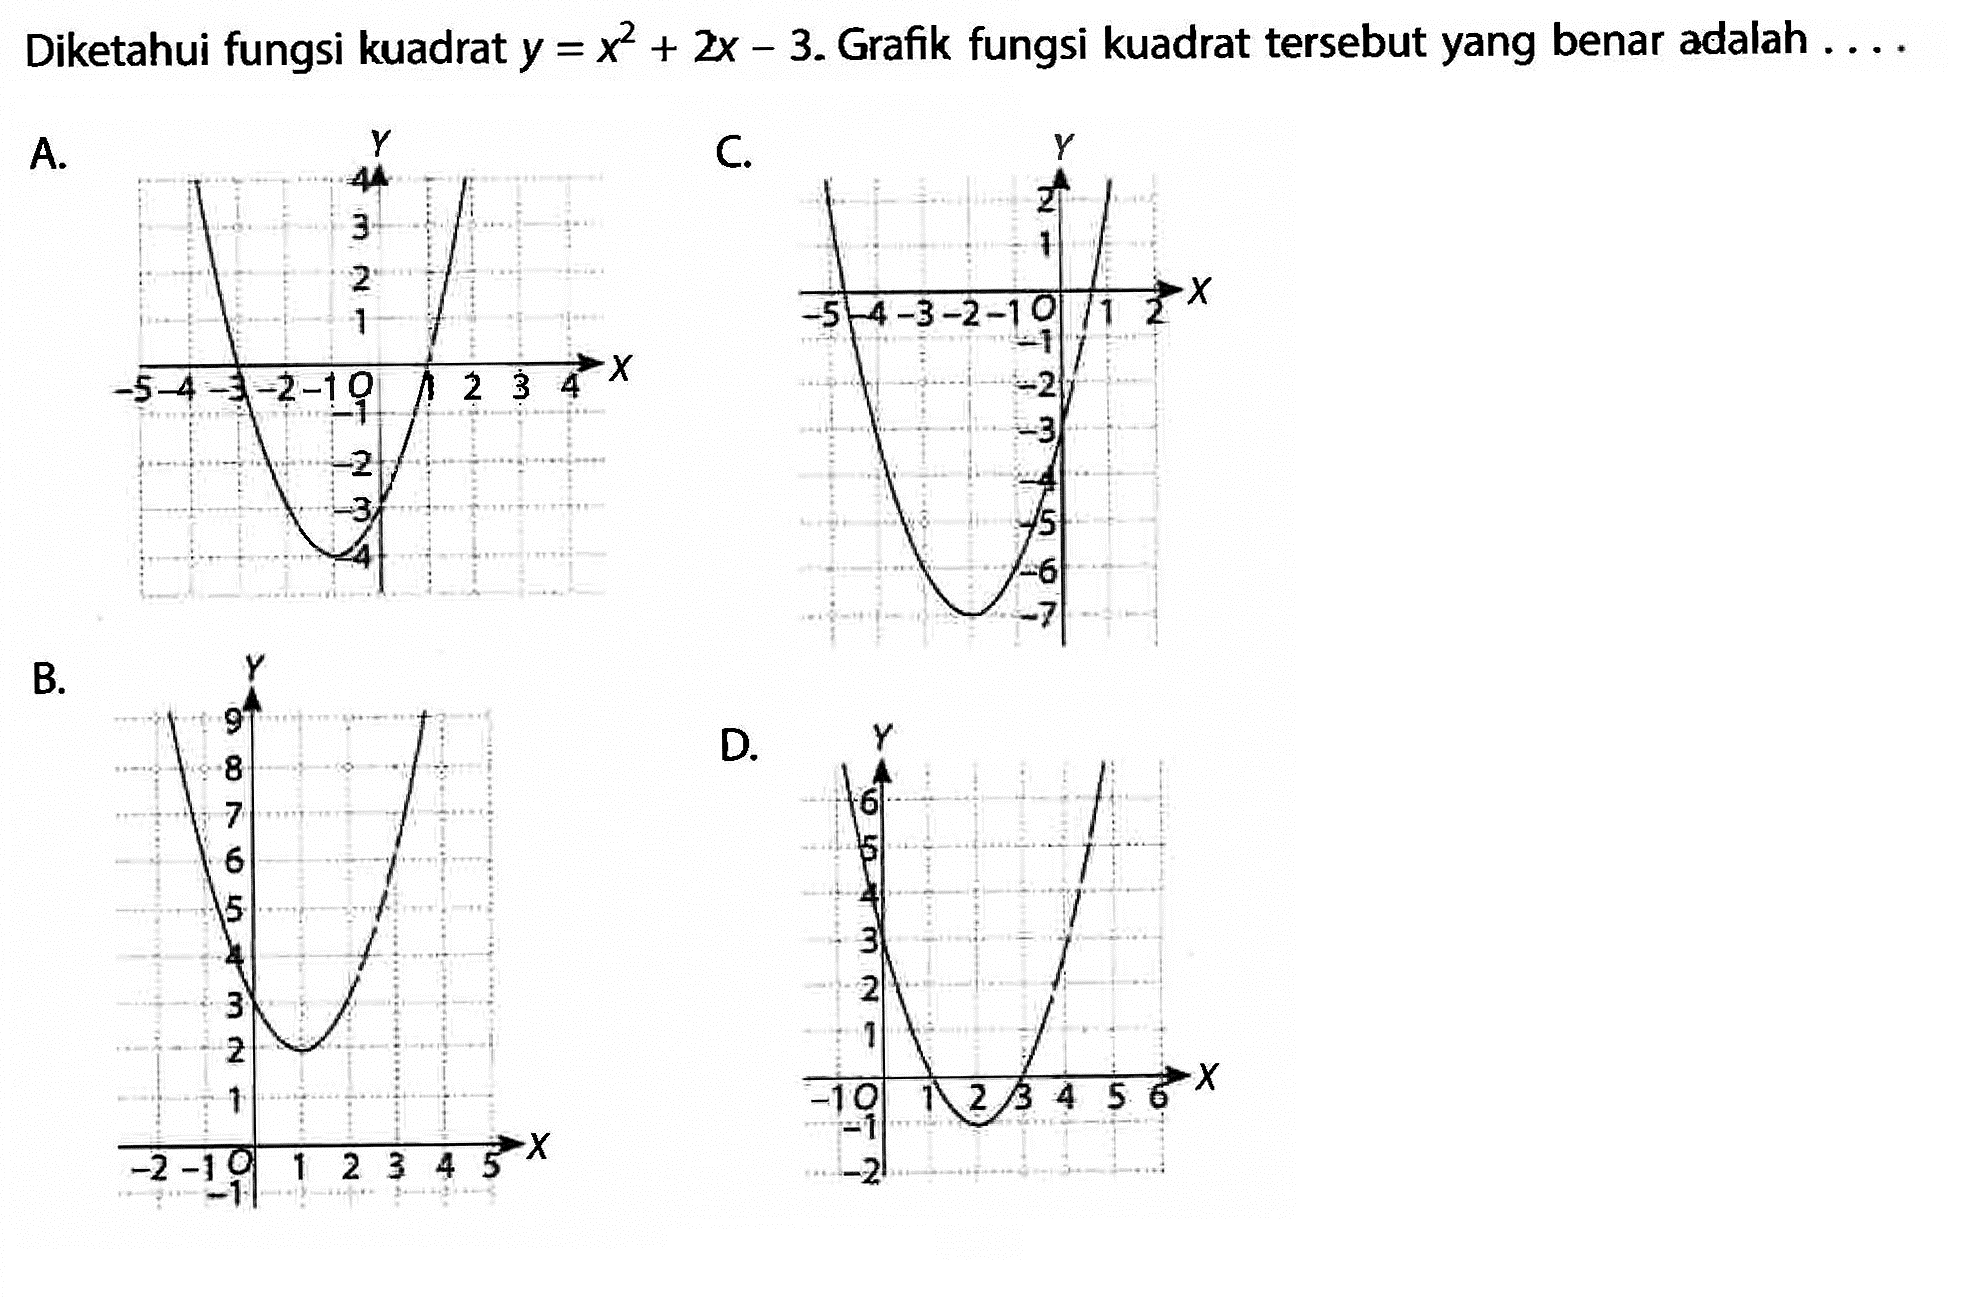 Diketahui fungsi kuadrat y = x^2 + 2x - 3. Grafik fungsi kuadrat tersebut yang benar adalah ....